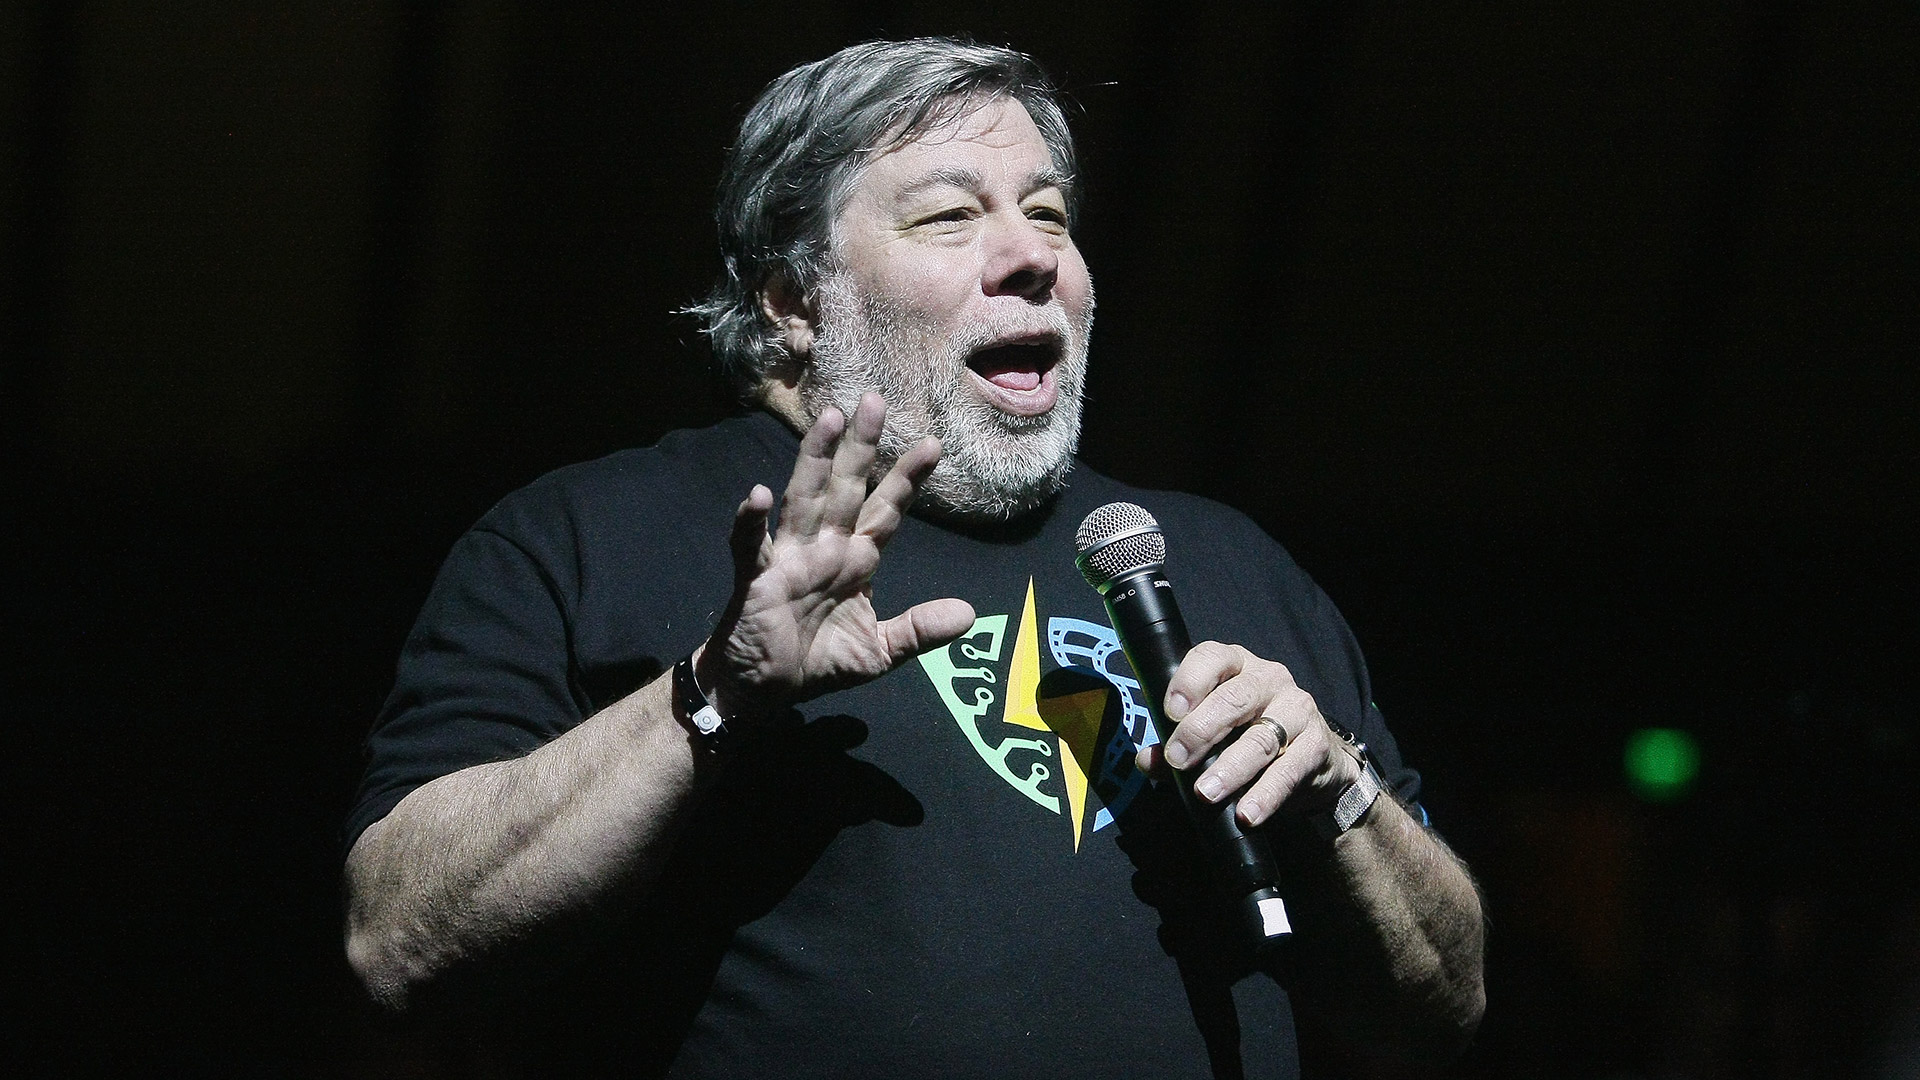 Wozniak y Jobs encontraron un equilibrio que funcionó: juntos definieron una nueva tecnológica que utiliza el mundo entro (Foto: John Medina/WireImage)